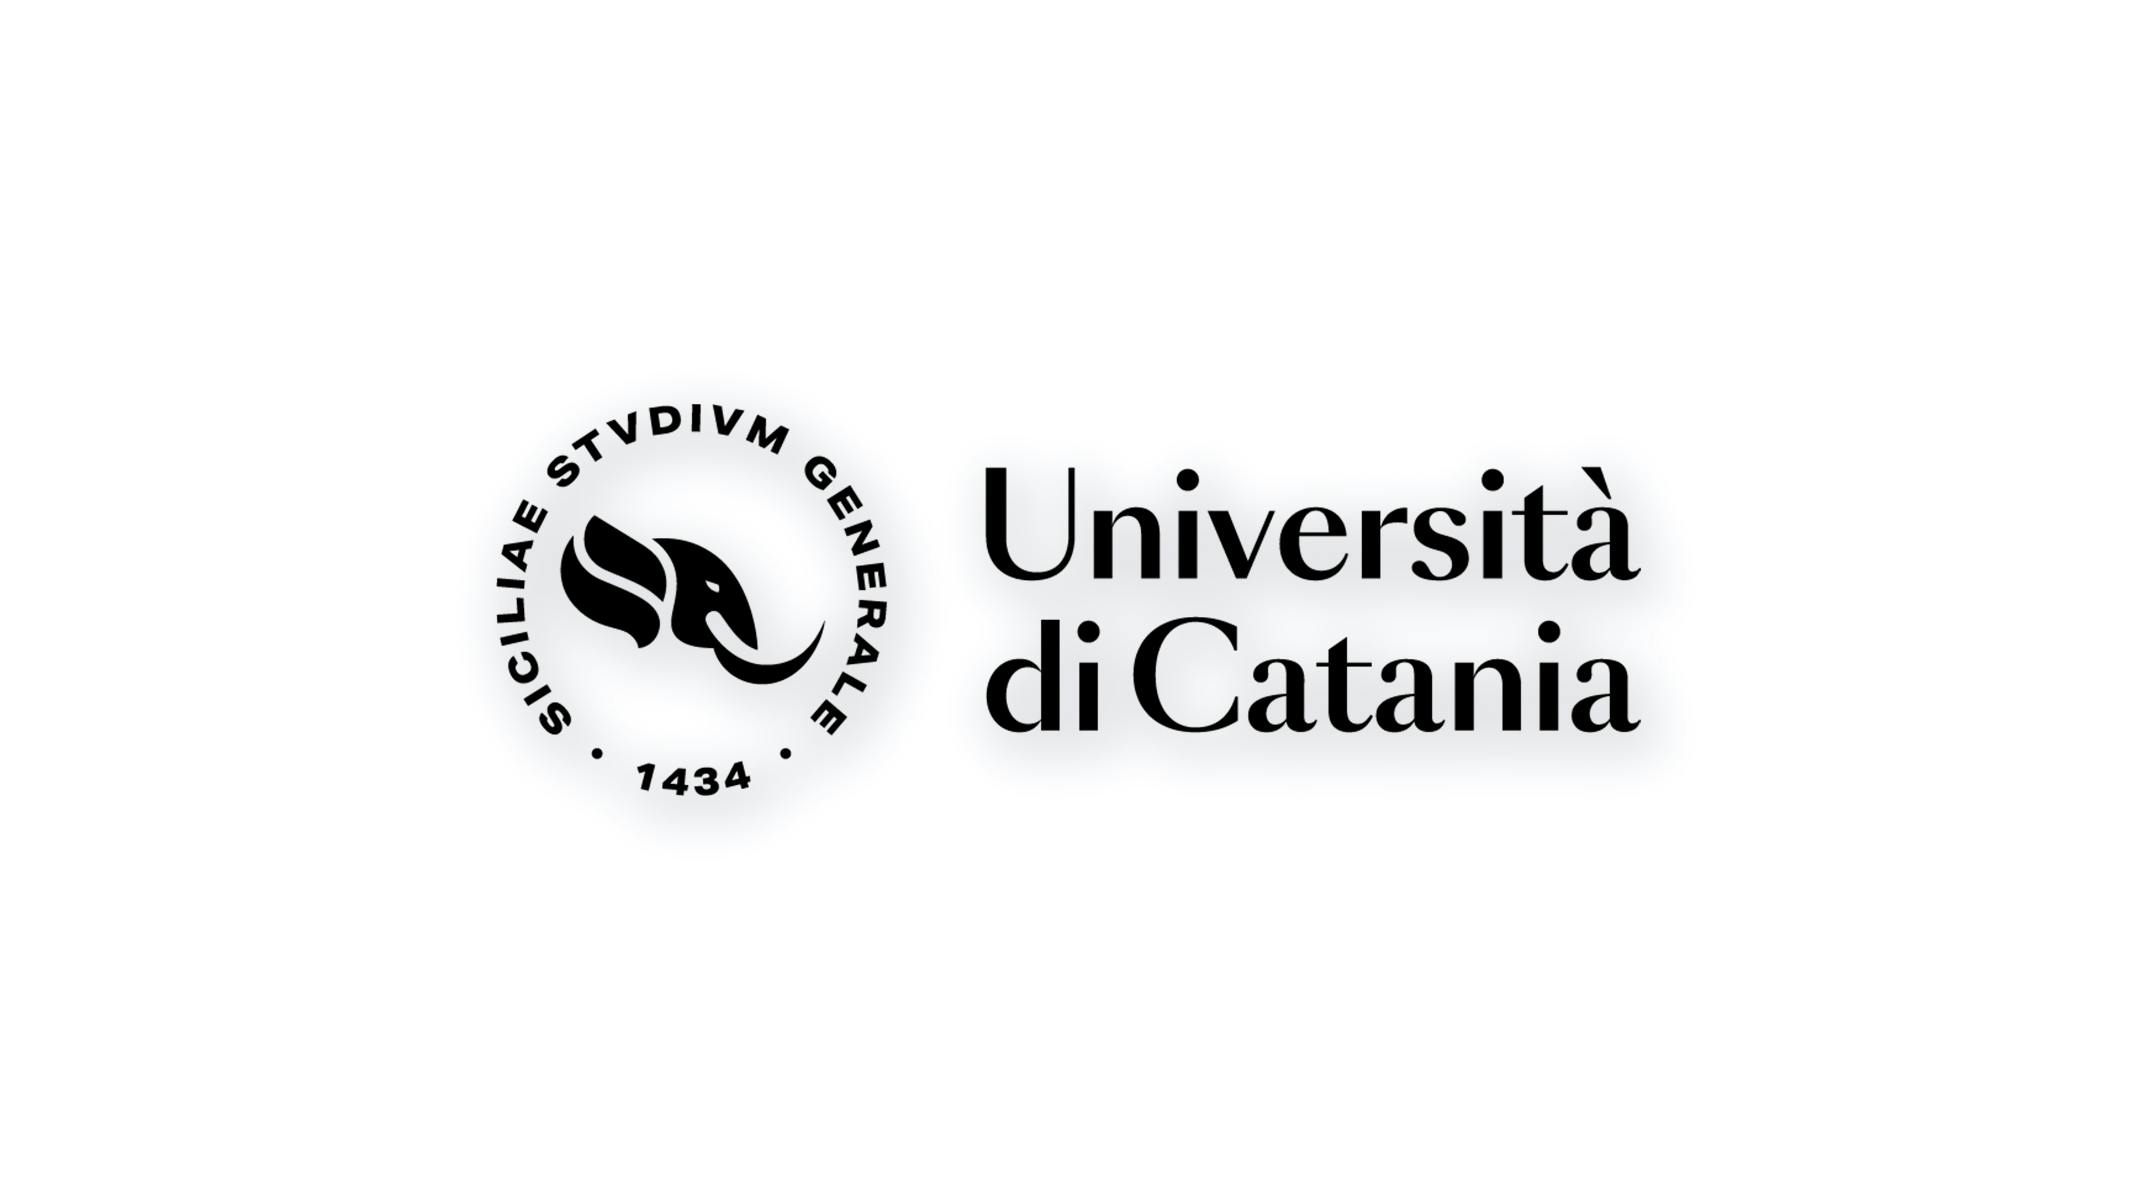 L'immagine mostra il logo dell'Università di Catania. Il logo è composto da un cerchio formato dalla scritta "SICILIAE STVDIVM GENERALE - 1434" con all'interno una rappresentazione grafica di un elefante (simbolo dell'università). Il logo è di colore nero su sfondo bianco con una leggera ombreggiatura al di sotto del logo.